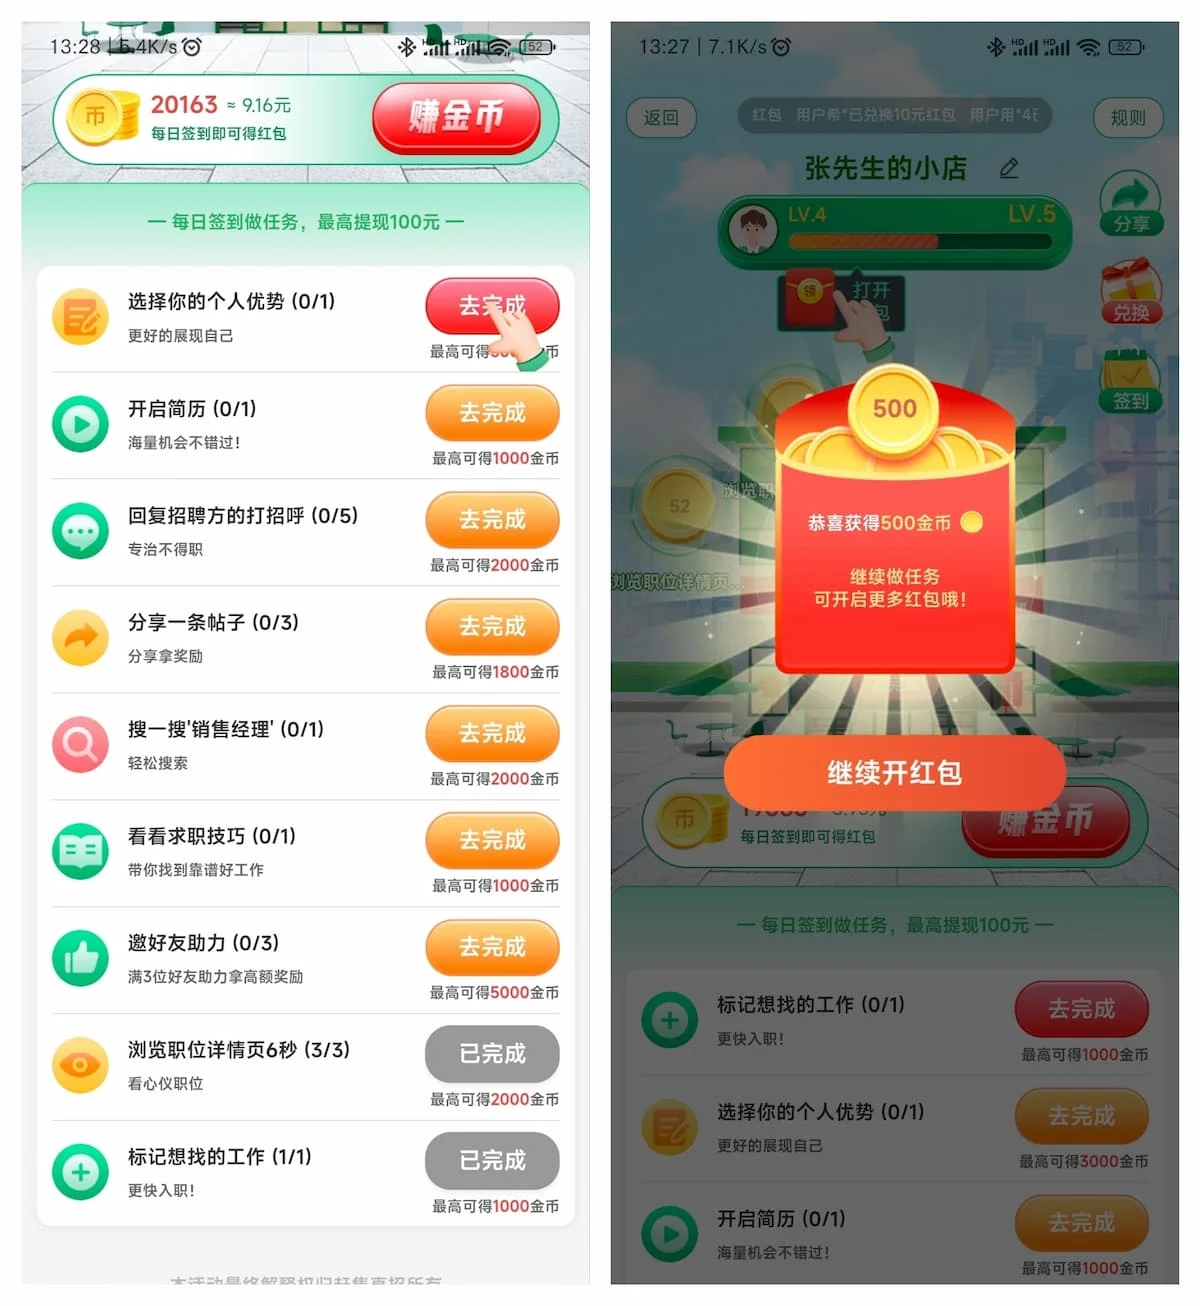 赶集网app梦想小店签到30天必得至少20元现金红包秒推微信零钱